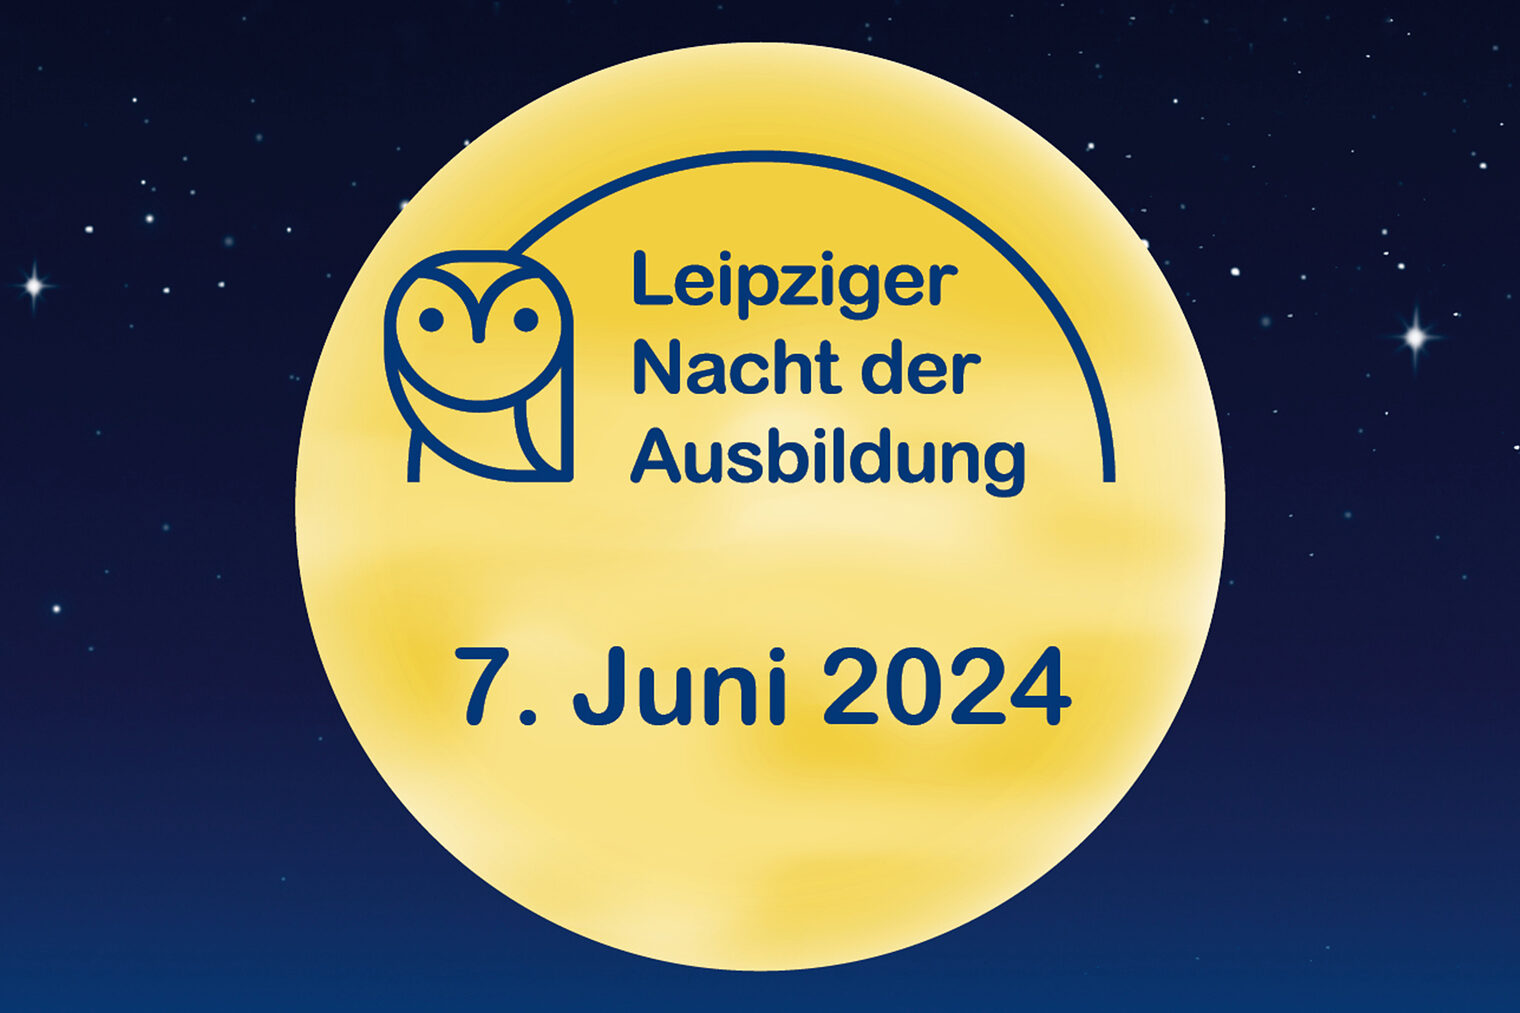 Leipziger Nacht der Ausbildung 2024